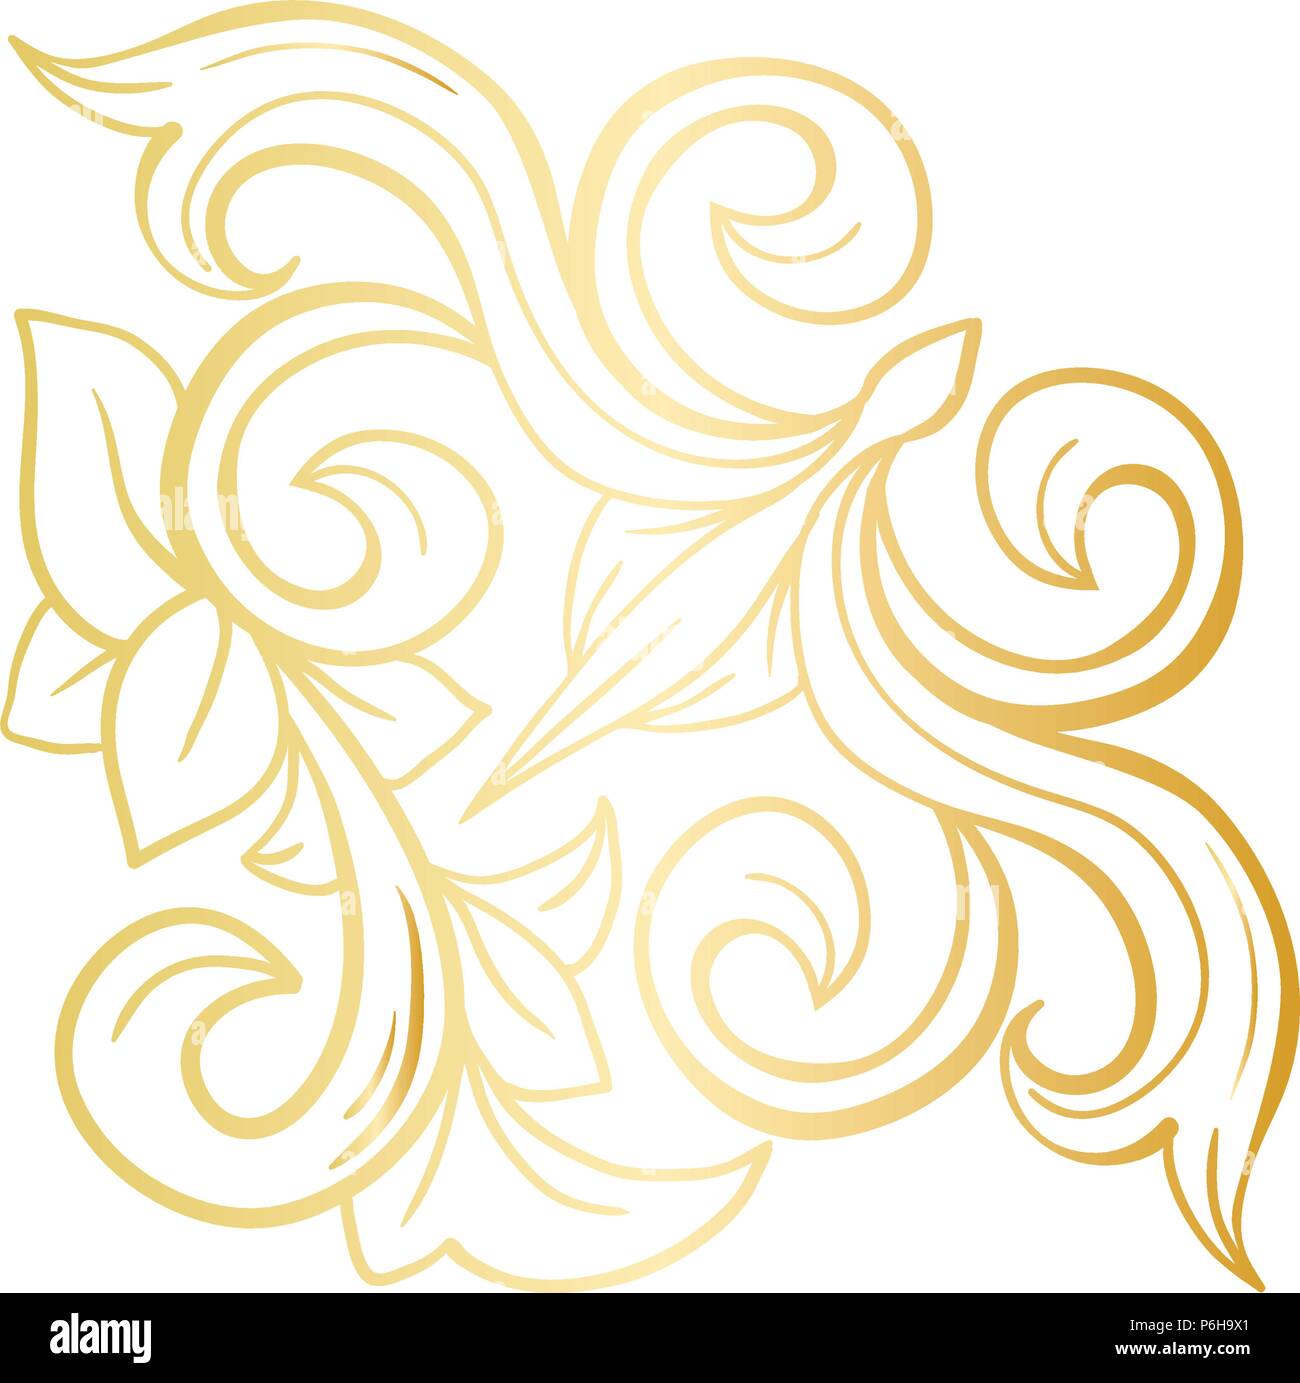 Les feuilles des plantes isolées d'or avec décorations. Baroque Italien s'épanouir pour noël ou mariage orné, d'un certificat. La couronne de fleurs jaunes ou couronne d'or. Luxe et de Victorian, royal et casque Illustration de Vecteur